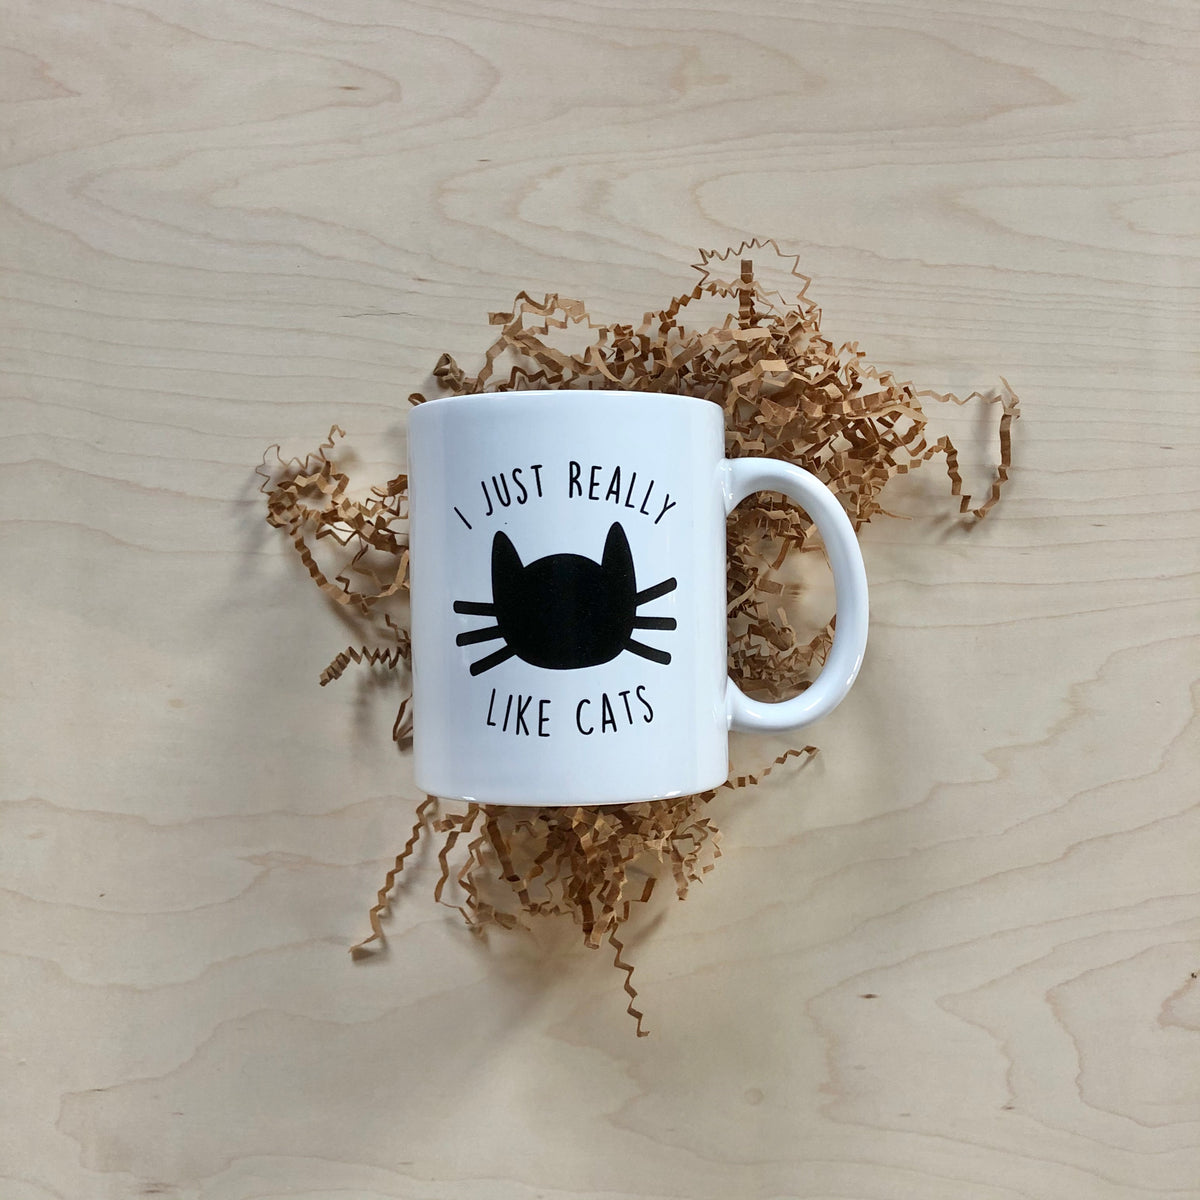 “I just really like cats” Ceramic Mug